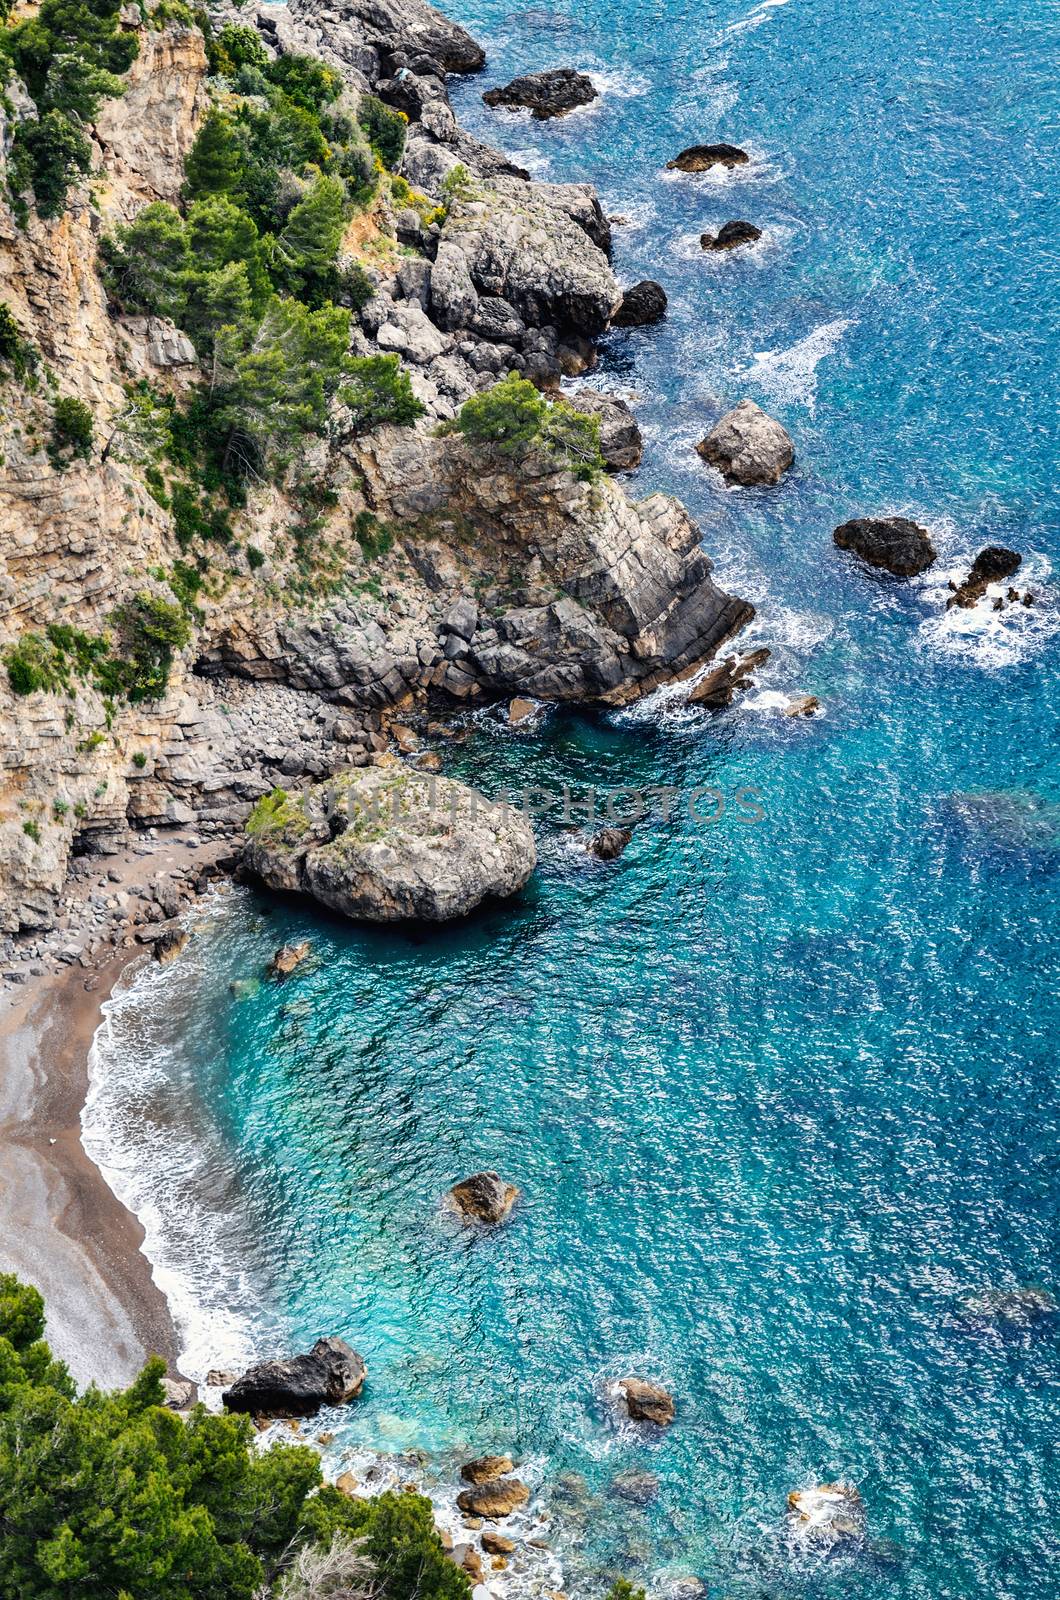 Rocks on the Amalfi coast by styf22